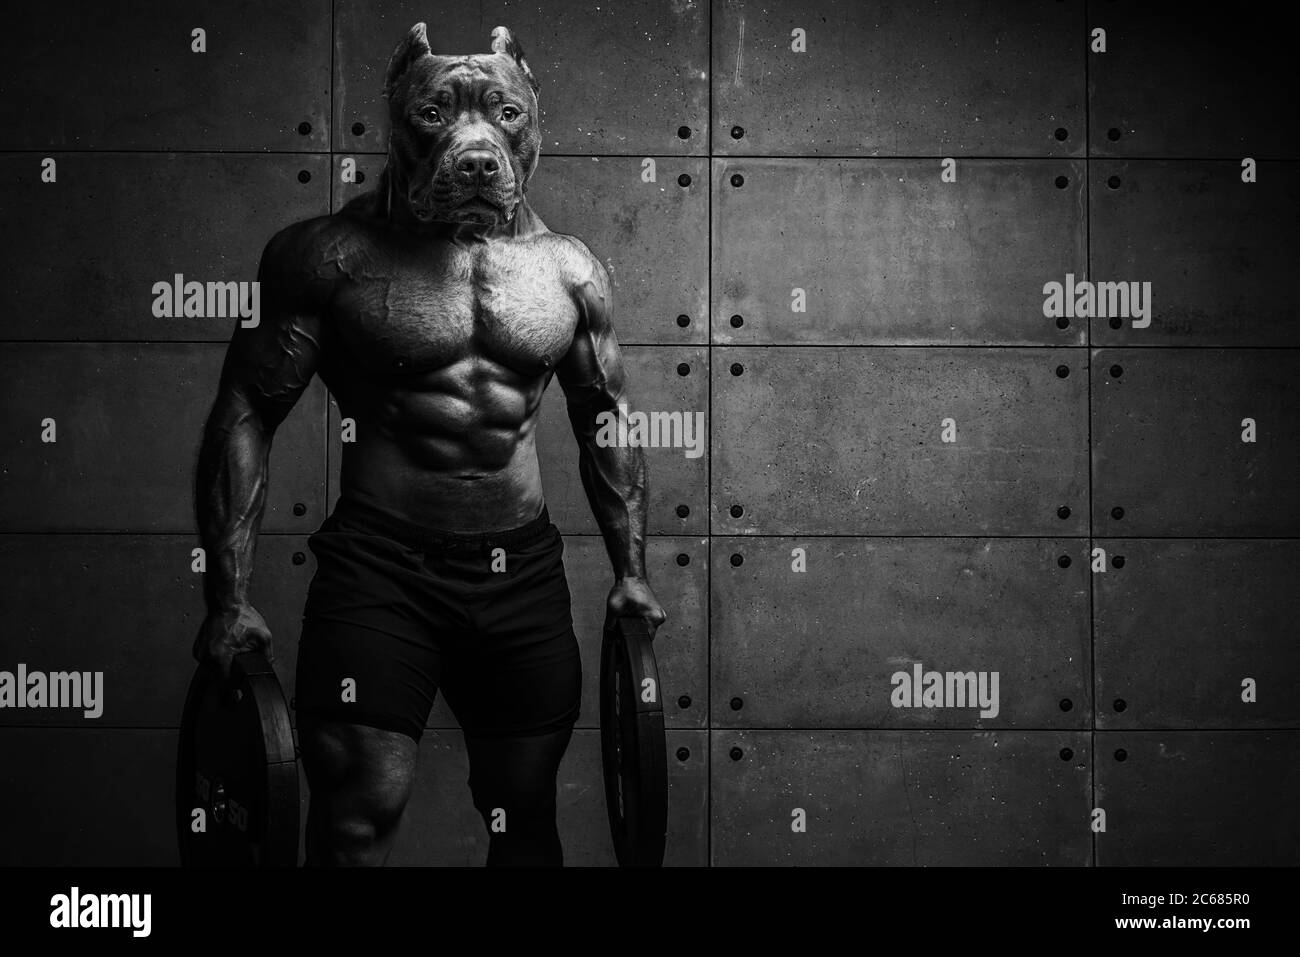 Bodybuilder homme-chien se tient sur le fond d'un mur en béton Himur UN homme avec une tête de chien Banque D'Images